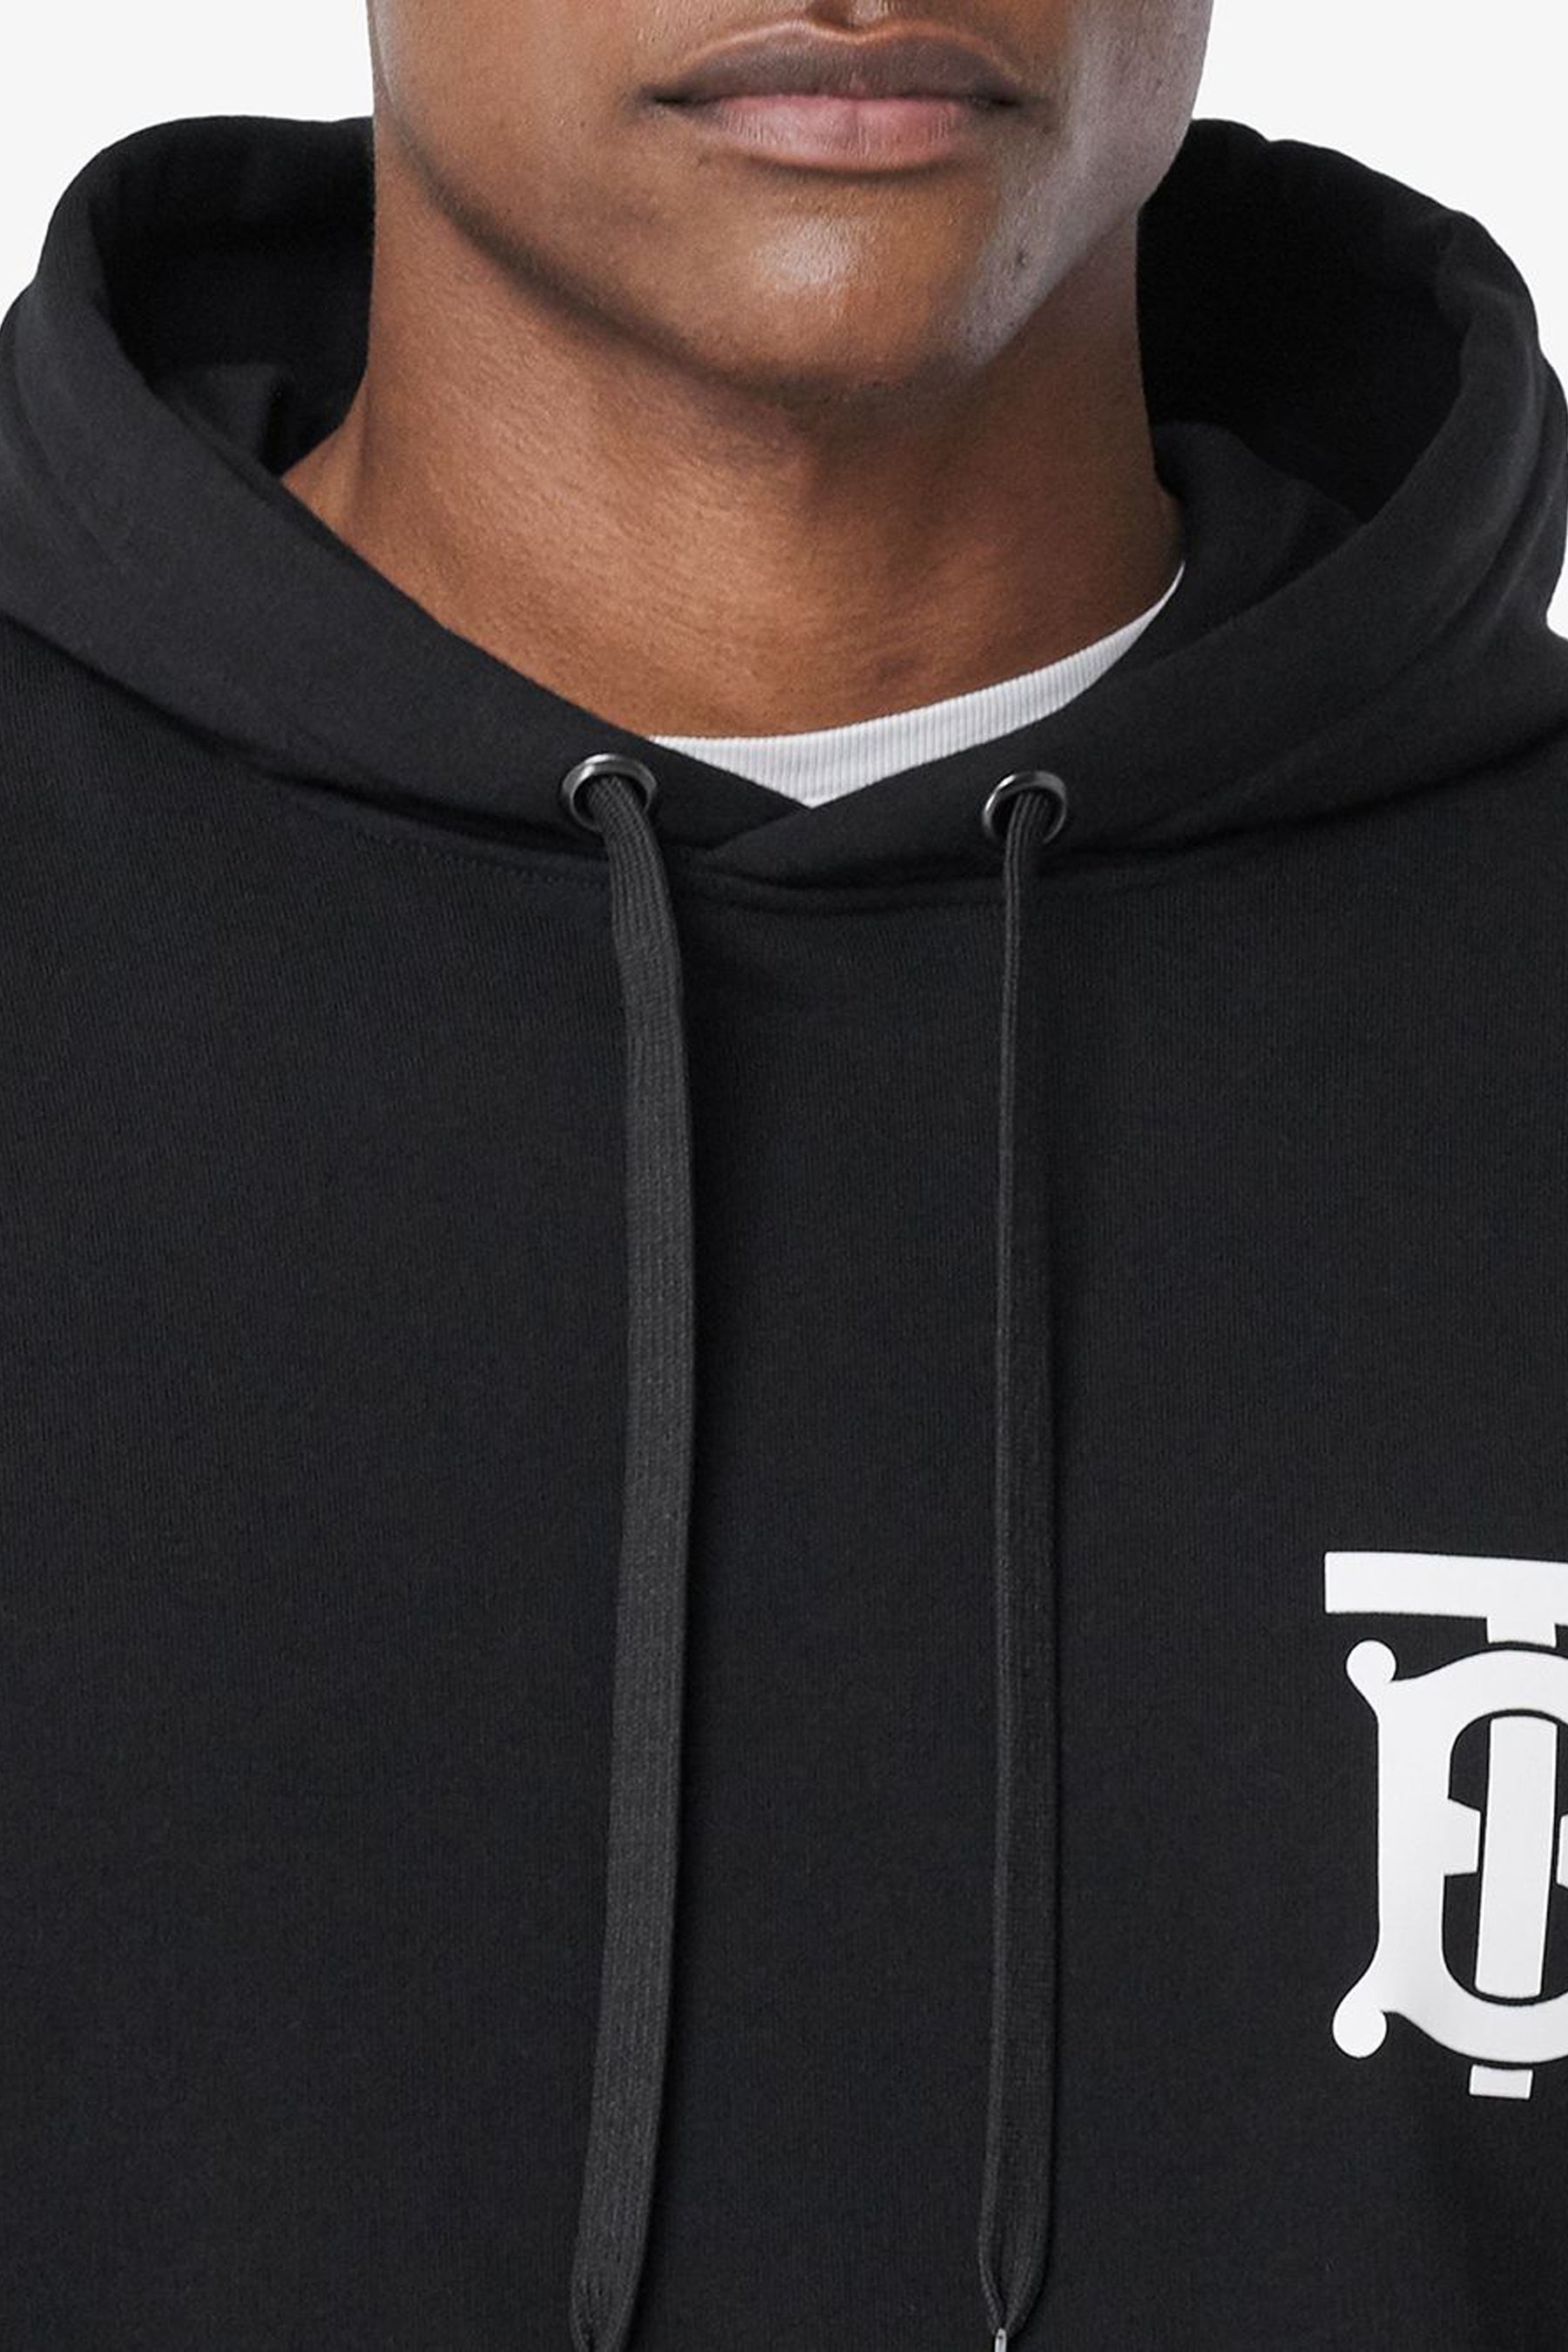 Burberry monogram-motif hoodie